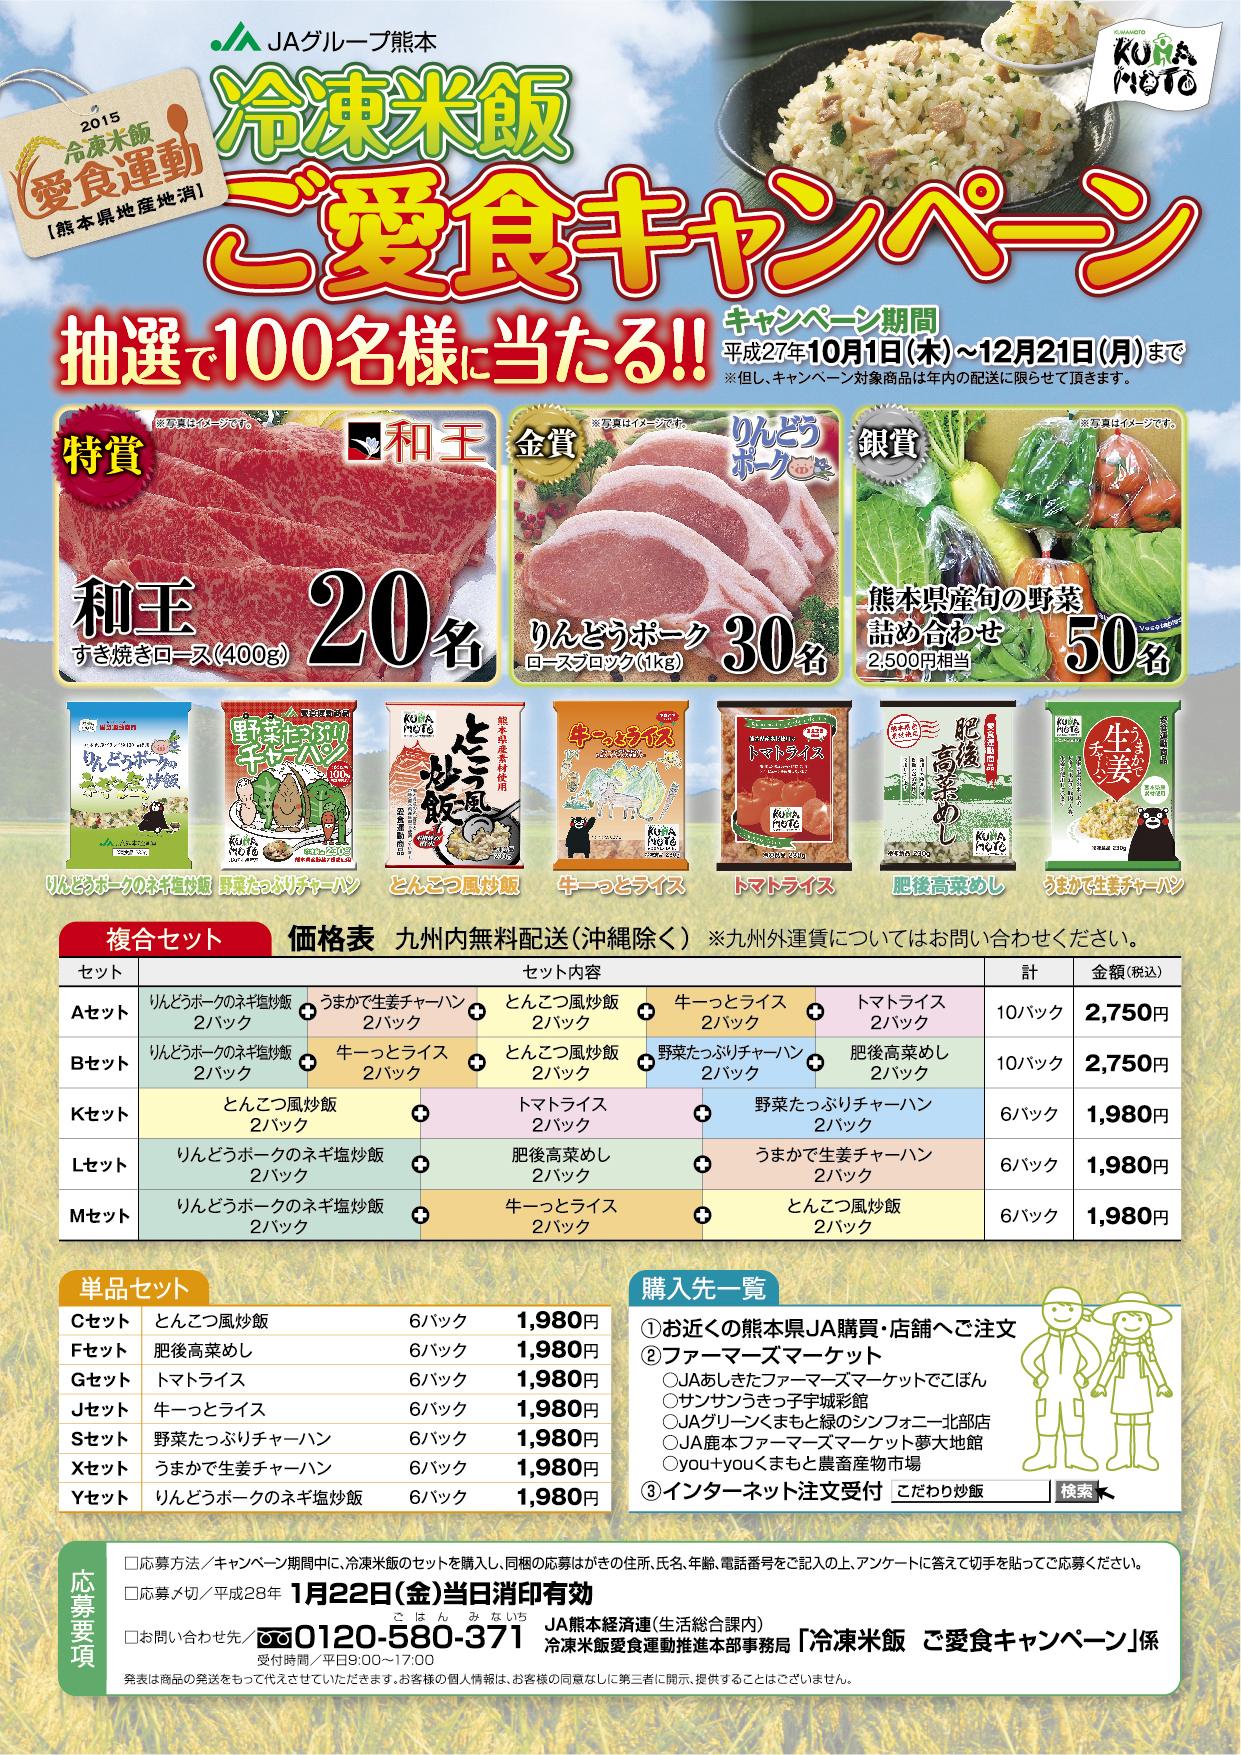 http://www.jakk.or.jp/news/mt-images/2015.10.1-.jpg